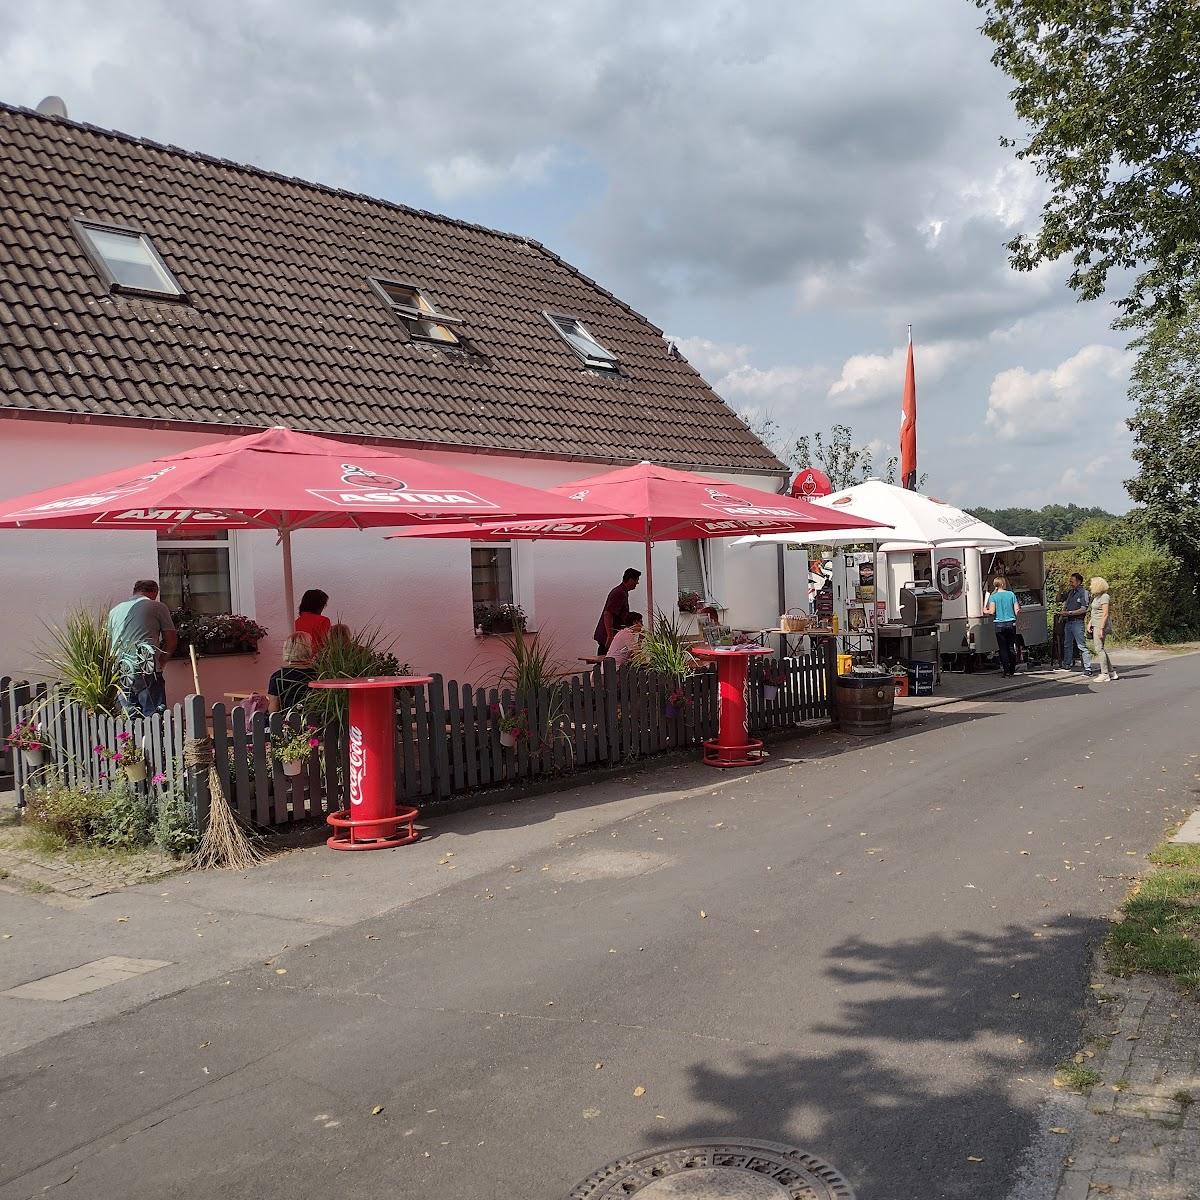 Restaurant "Dudel-Bude" in Hünxe